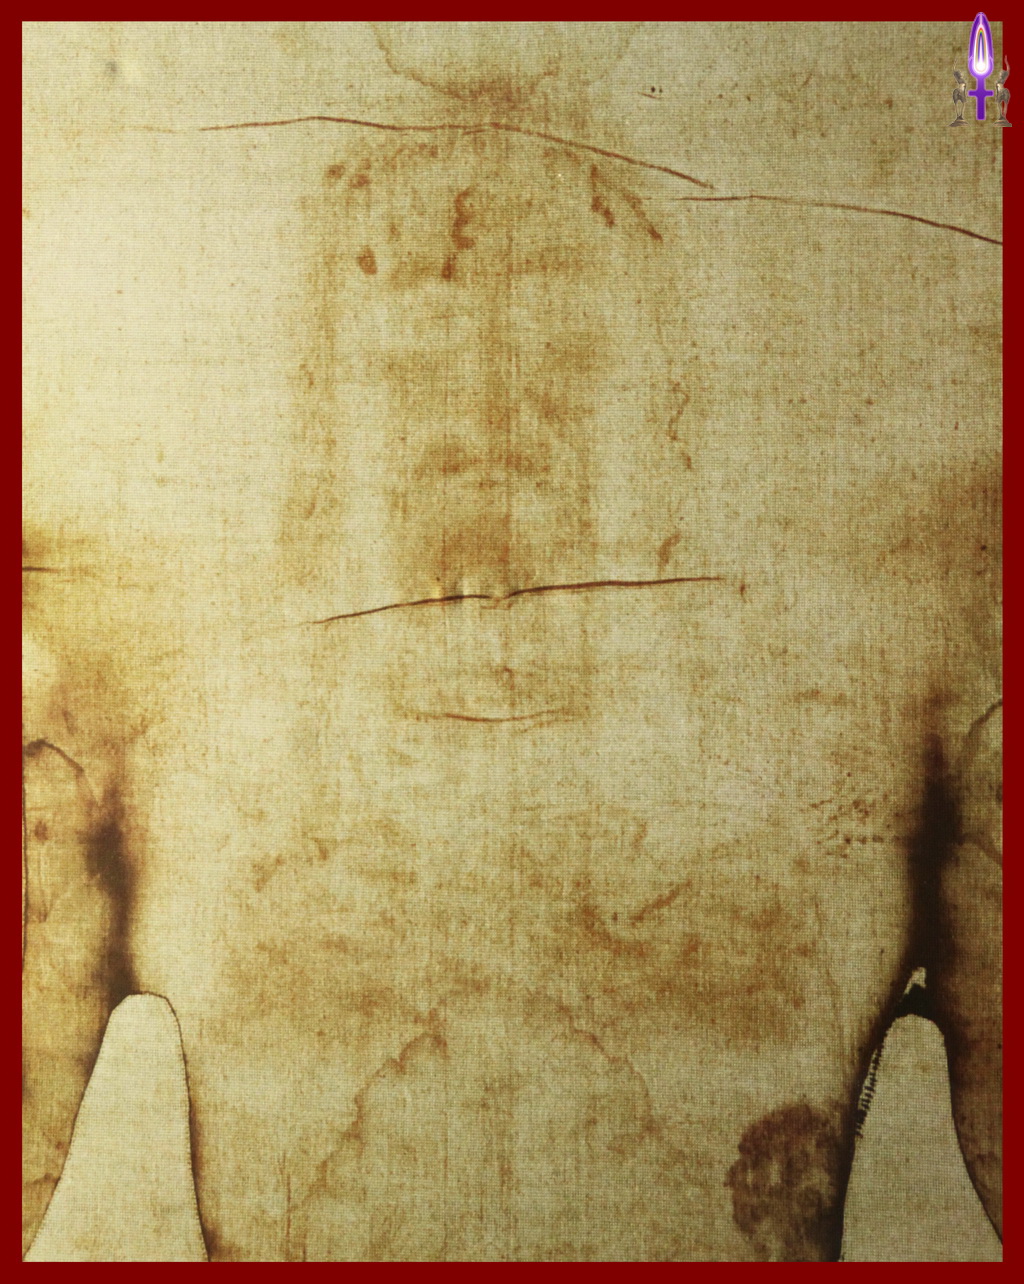 Photo No 6, agrandissement du visage imprimé sur le linceul supposé être celui du Christ...